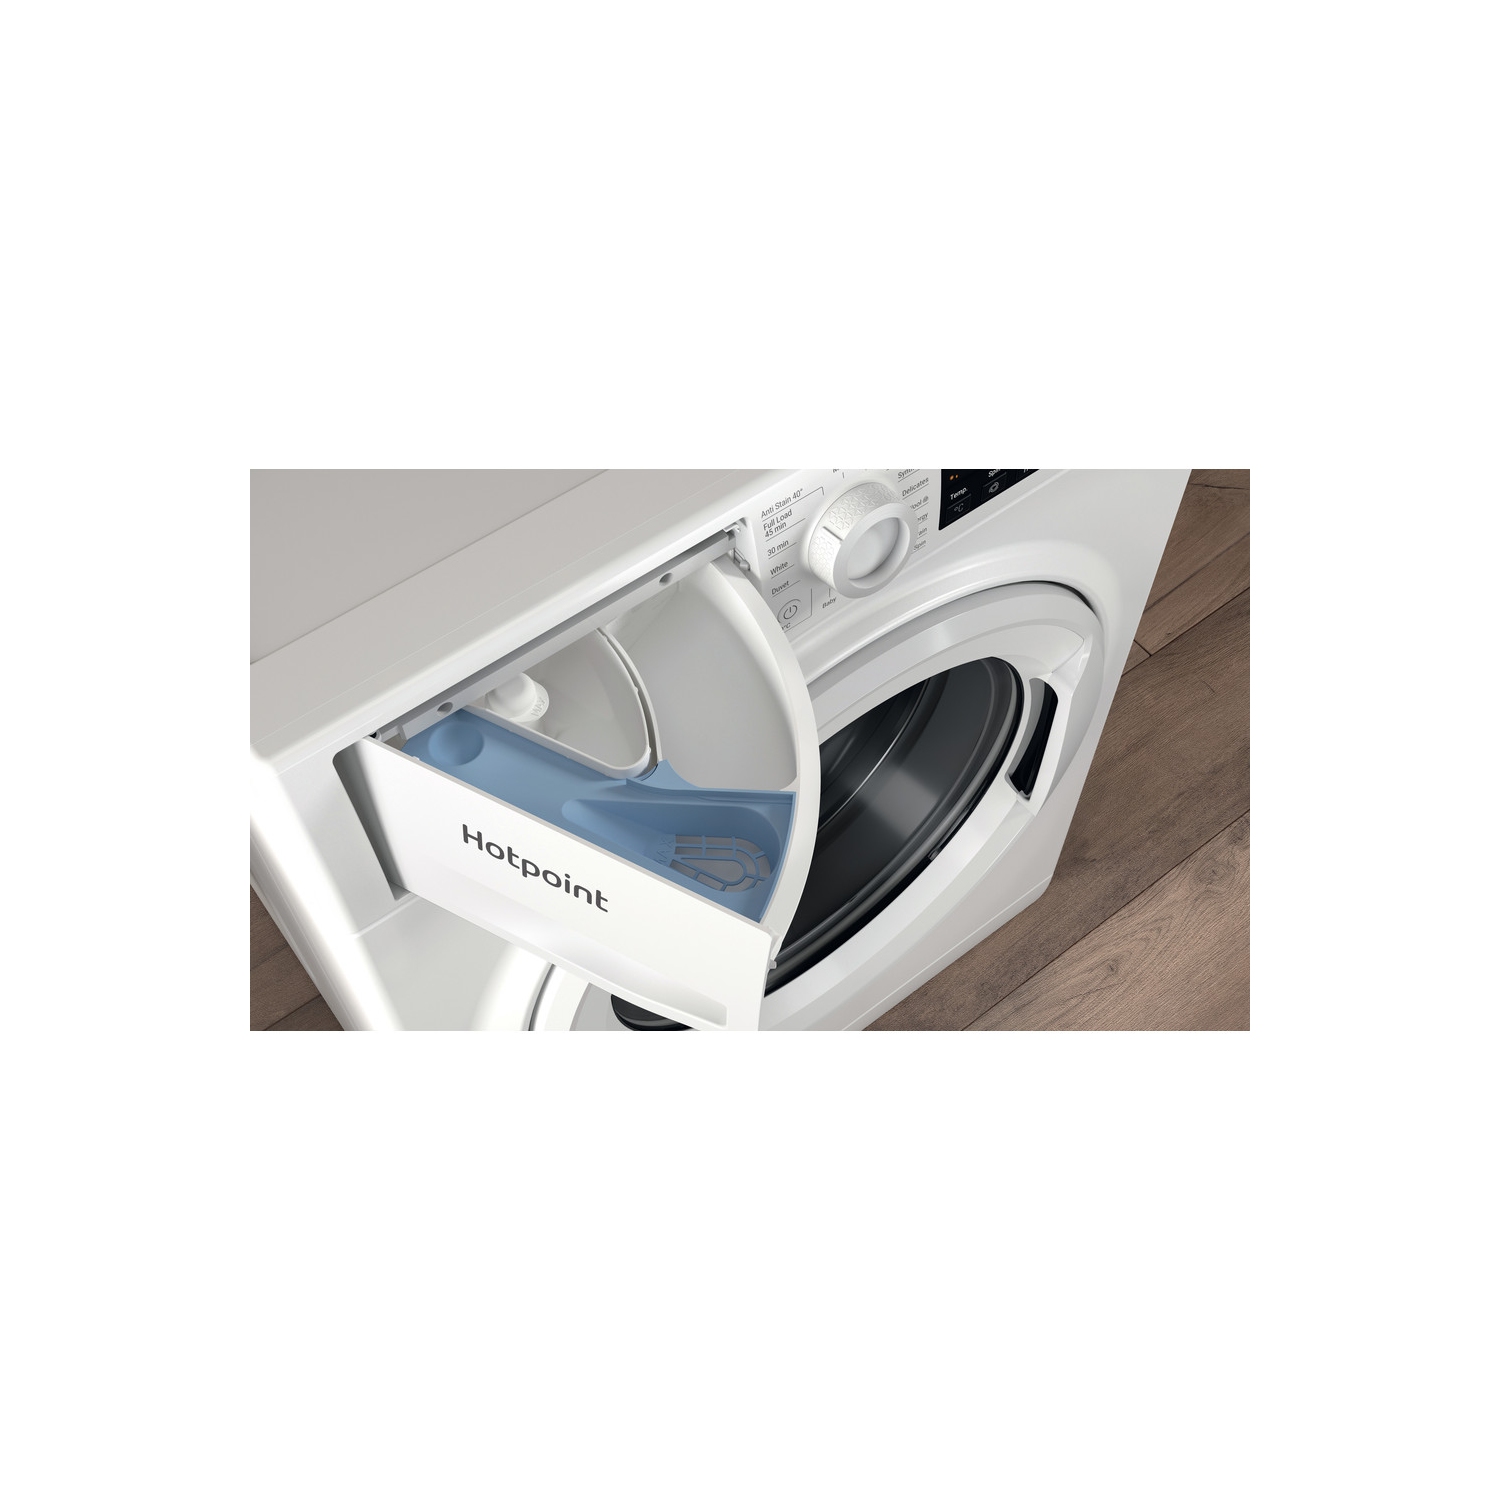 Hotpoint 8kg 1400 Spin Washing Machine - White - D - 10